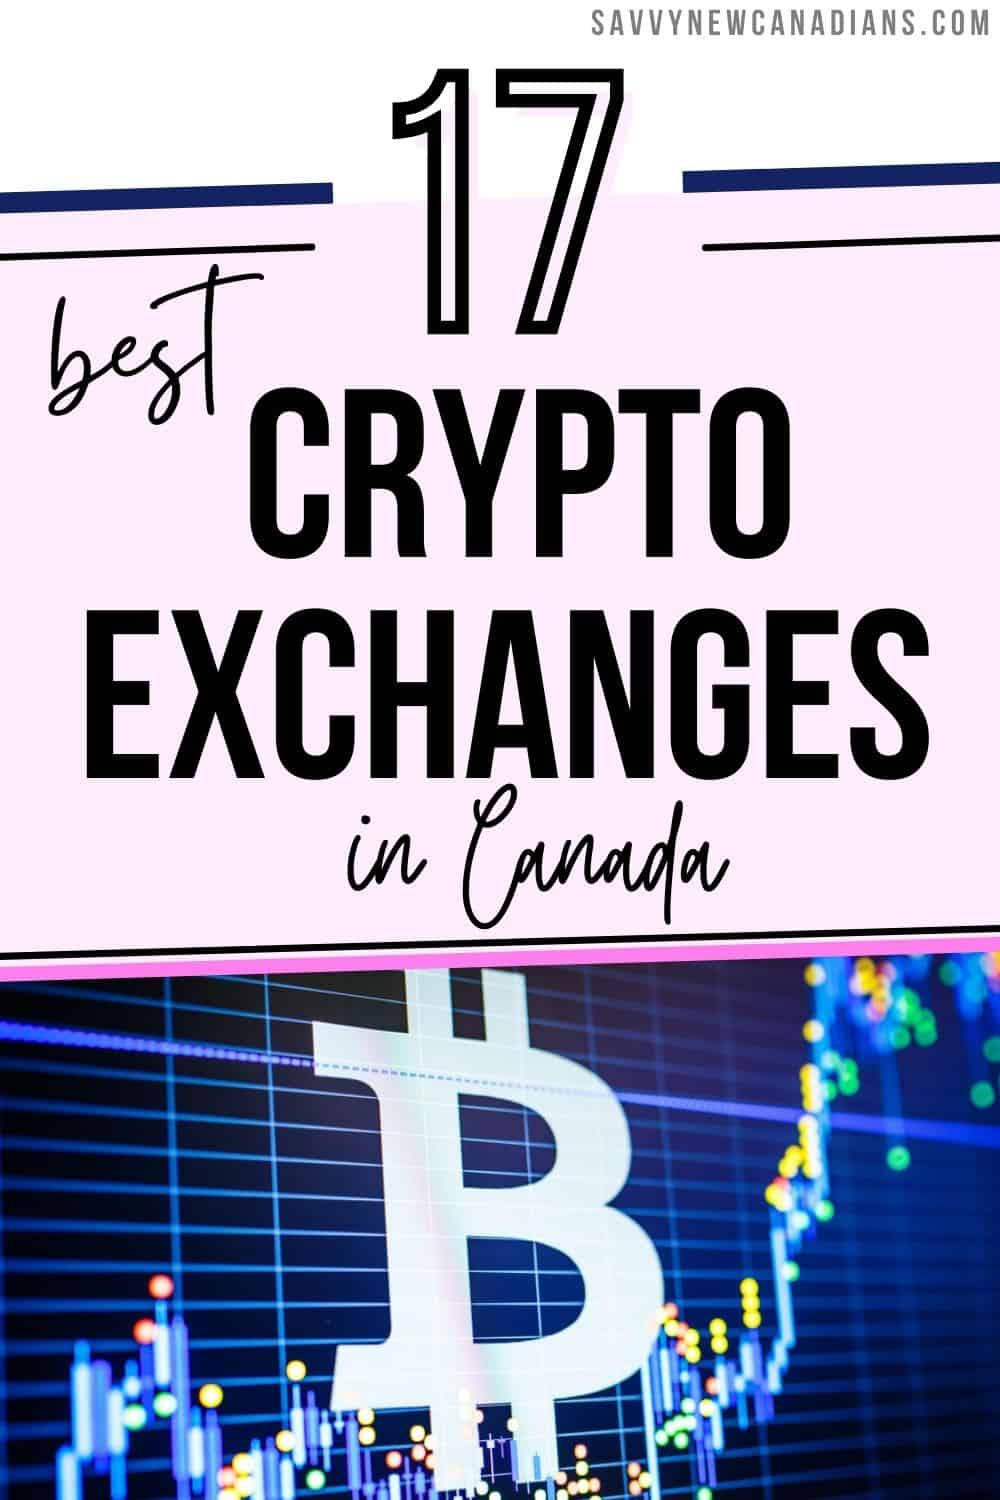 canadian exchange crypto